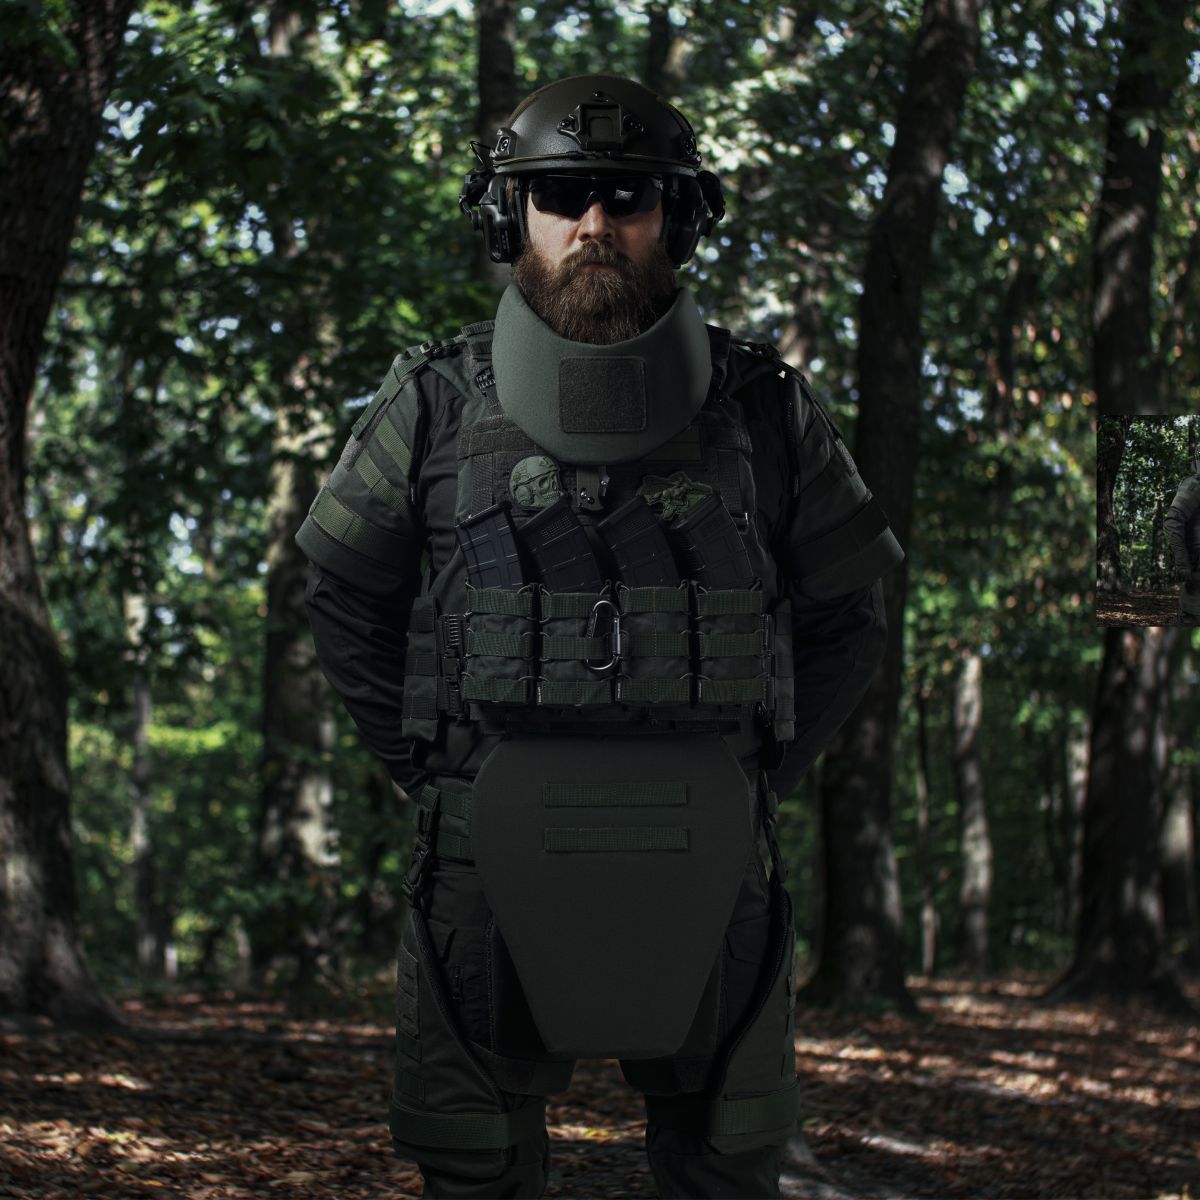 Бронекостюм A.T.A.S. (Advanced Tactical Armor Suit) Level I. Класс защиты – 1. Олива. L/XL 3